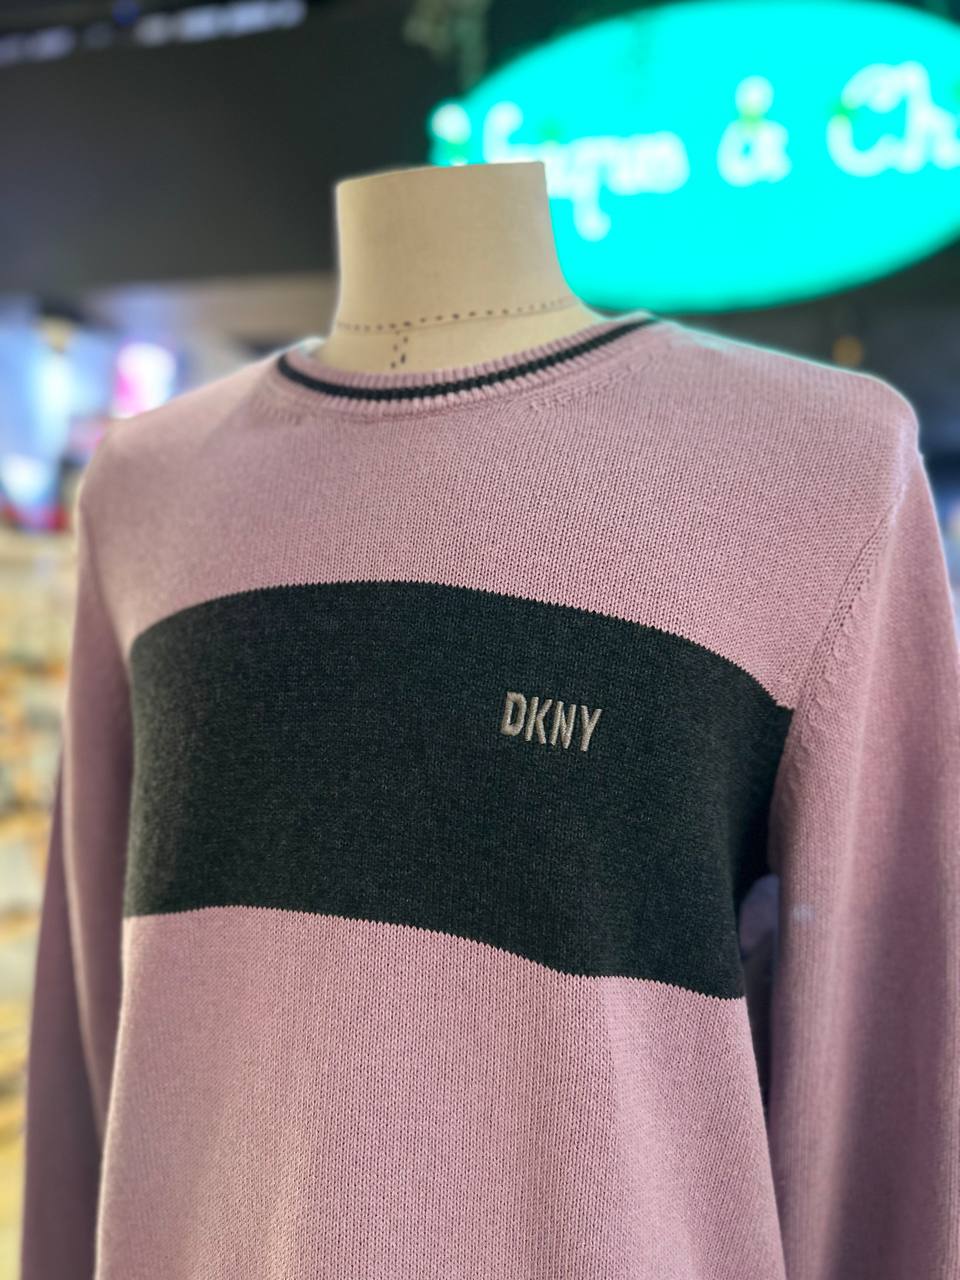 Dkny sweater